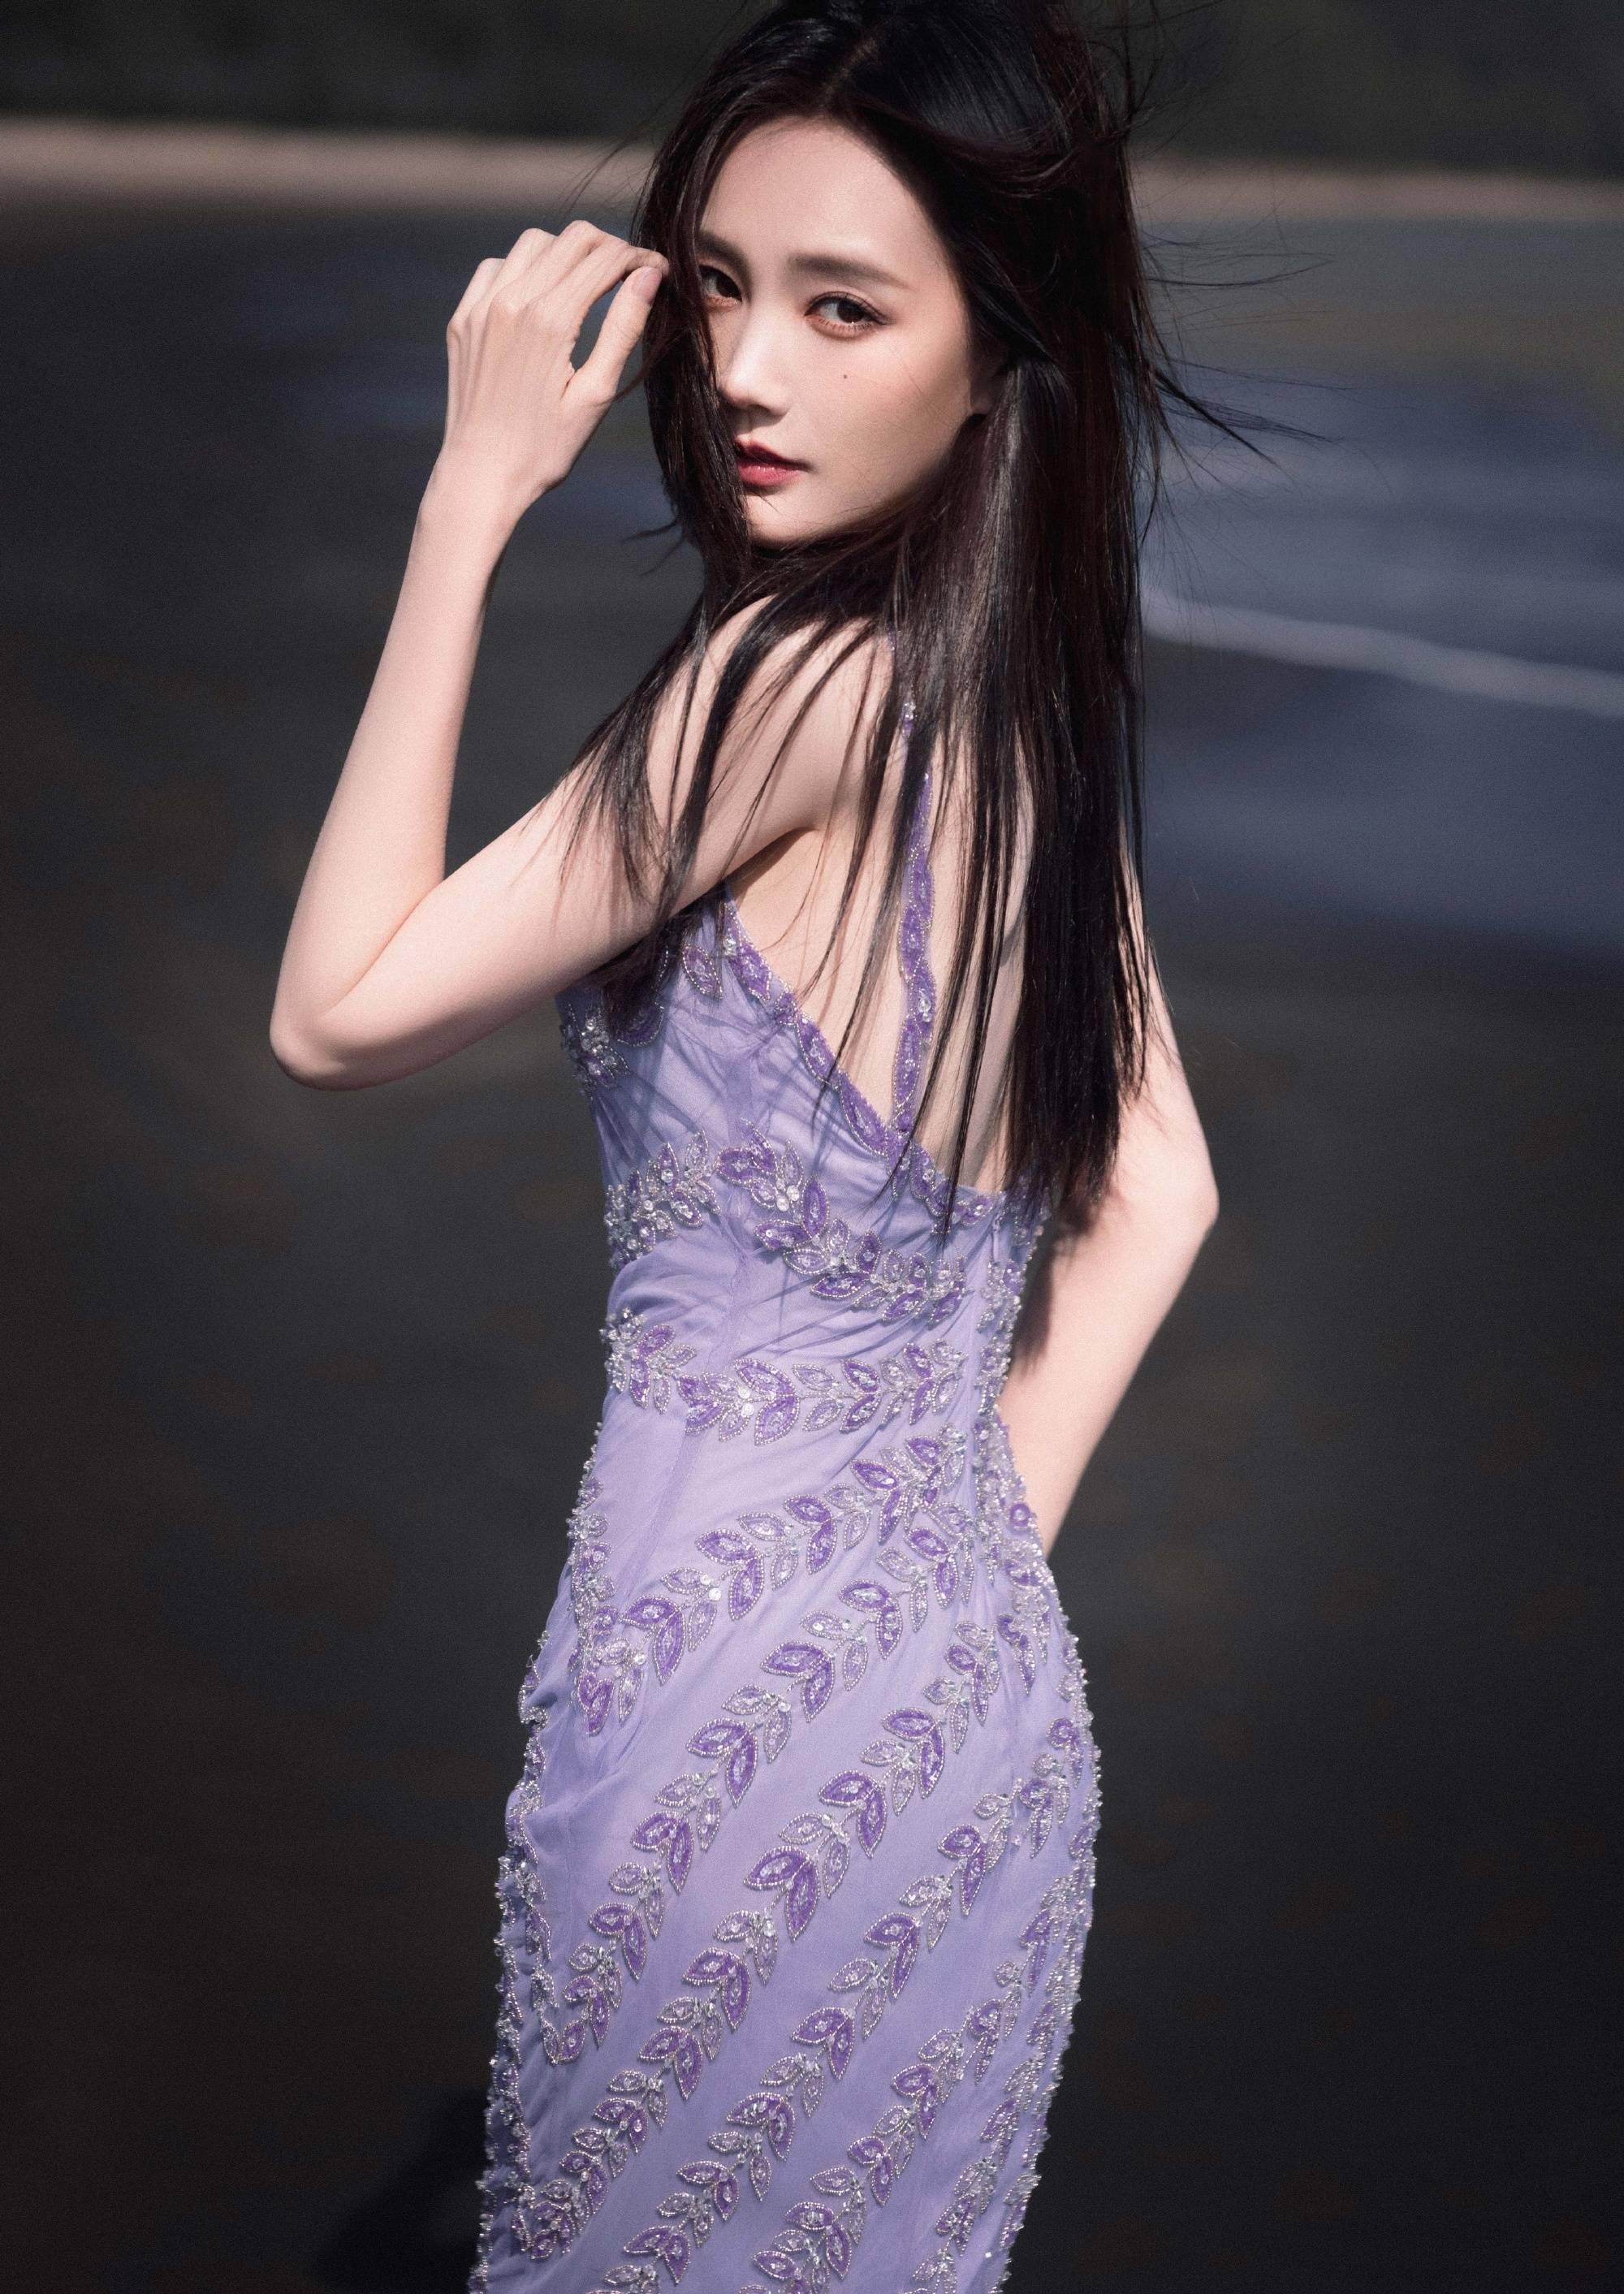 张柏芝波浪长发搭紫色长裙 优雅高贵宛如蔷薇绽放-搜狐大视野-搜狐新闻